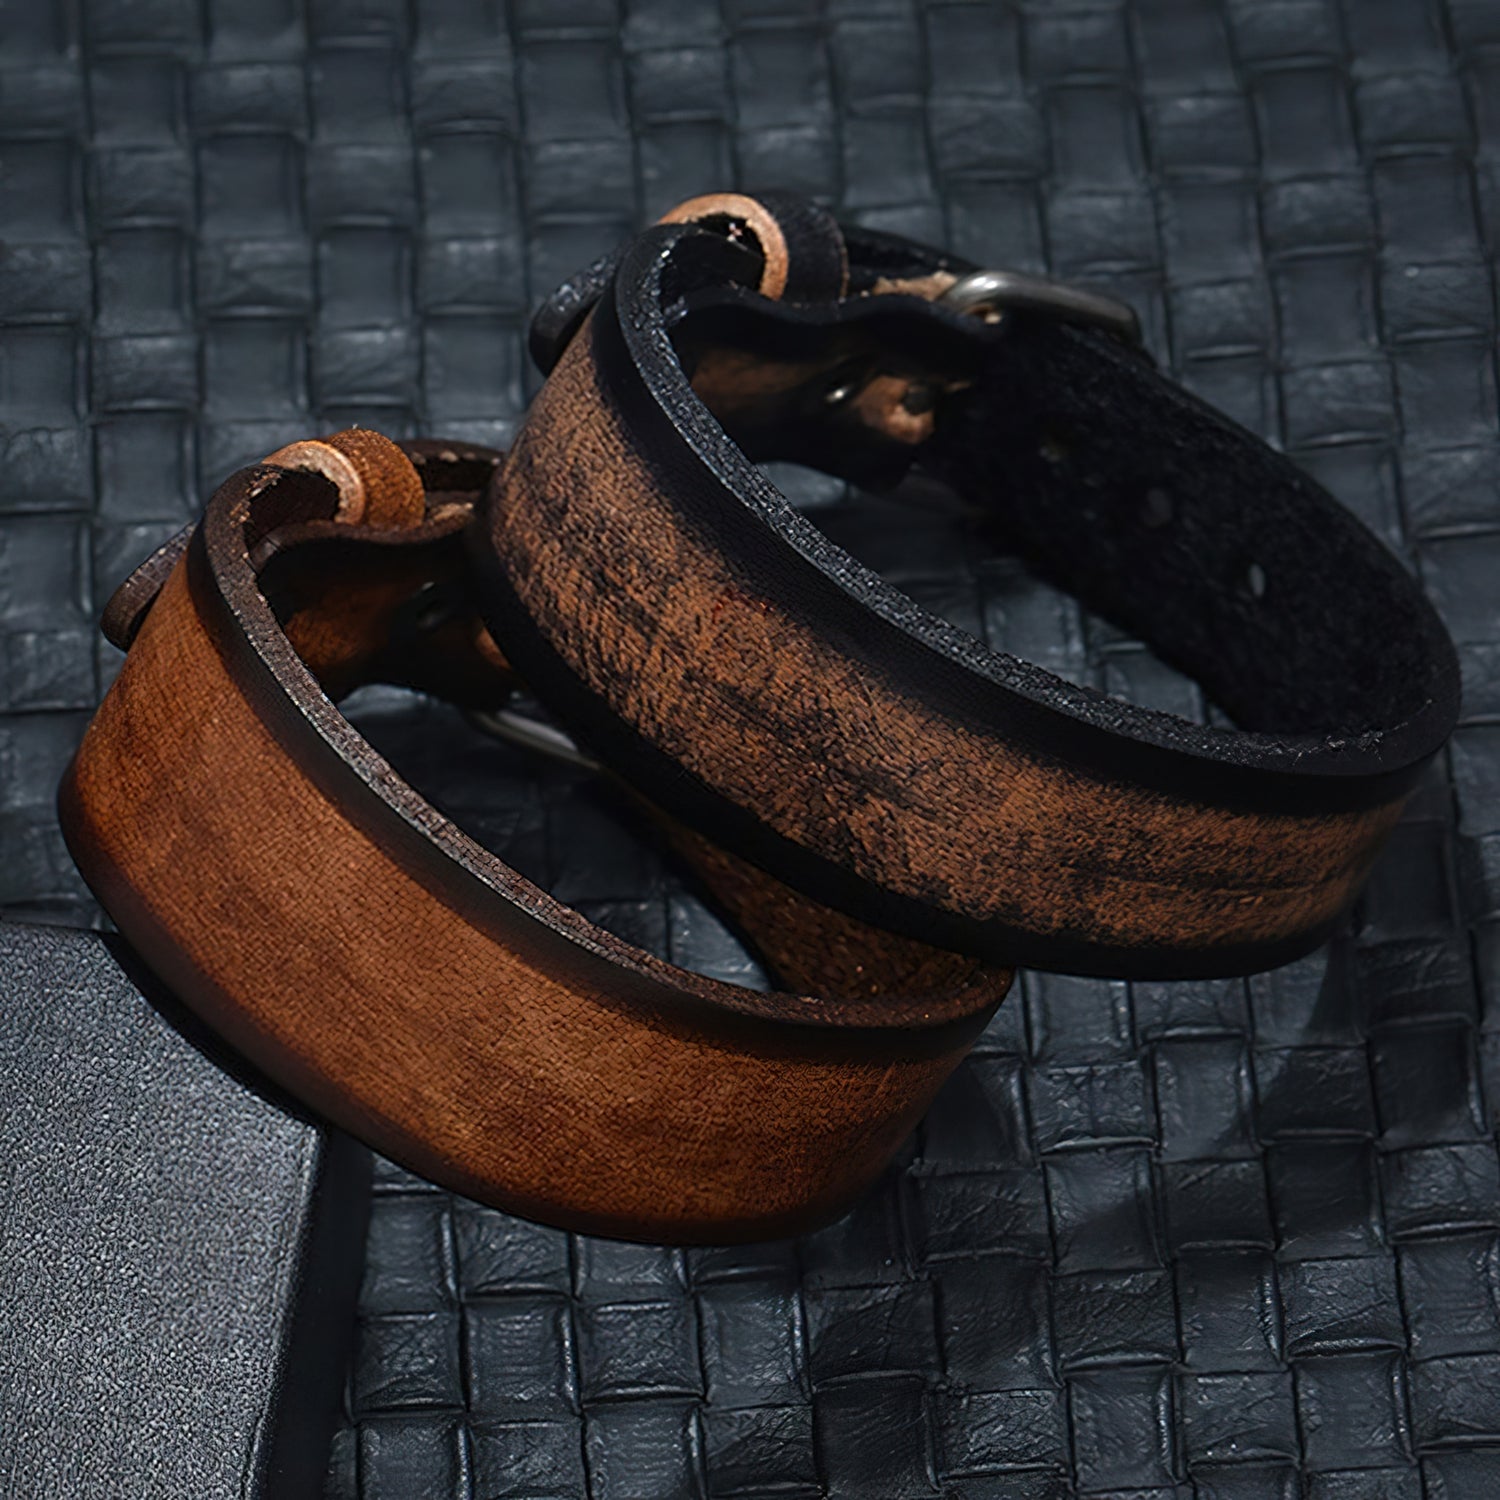 Vintage Leather Bracelets For Men